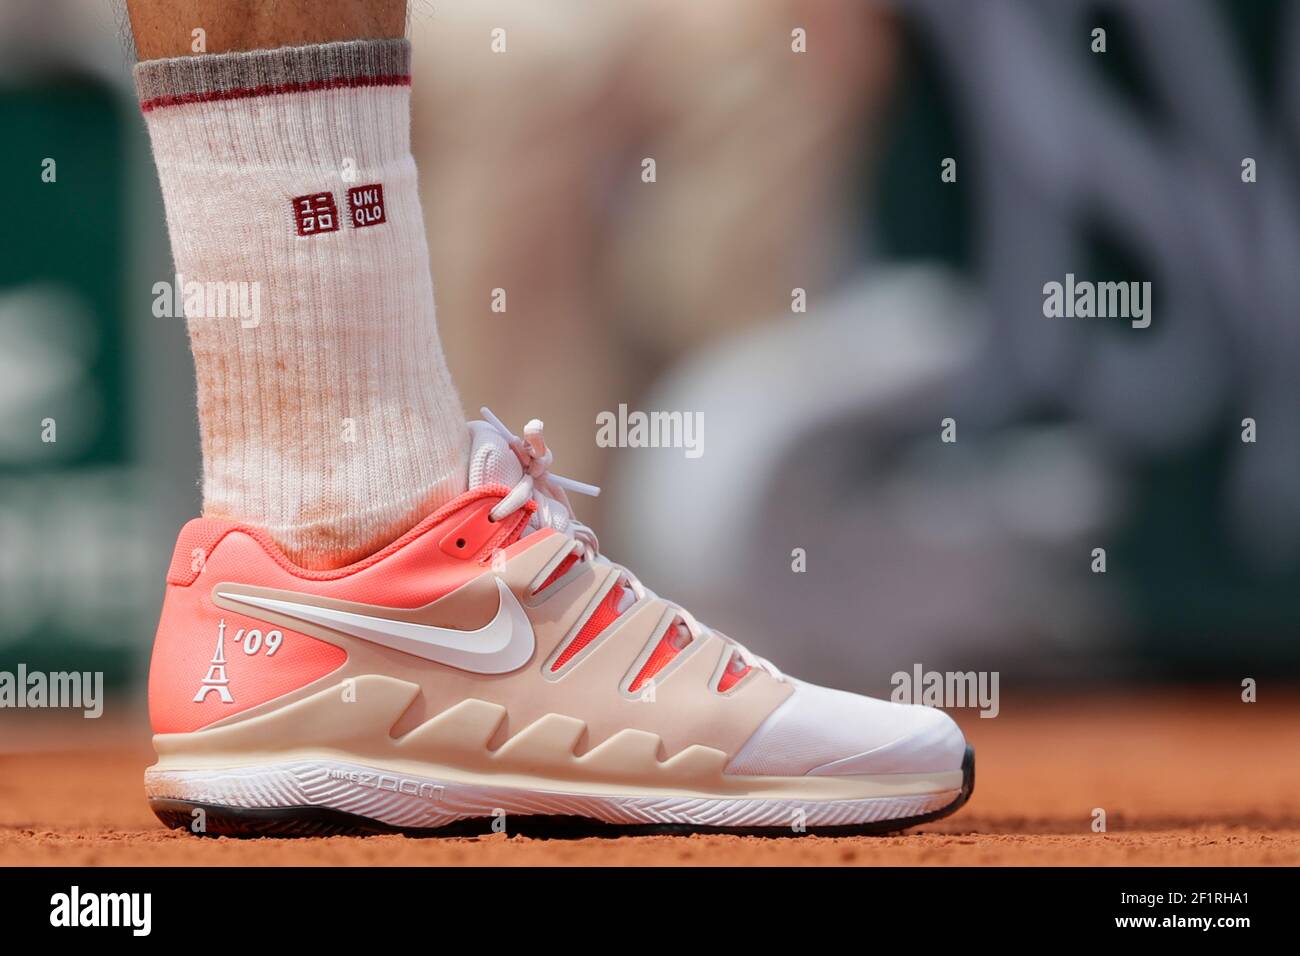 Chaussures Nike de Roger FEDERER (SUI) avec la Tour Eiffel 09 lors du Roland -Garros 2019, Grand Chelem tennis Tournament, tirage pour Homme le 4 juin  2019 au stade Roland-Garros à Paris, France -